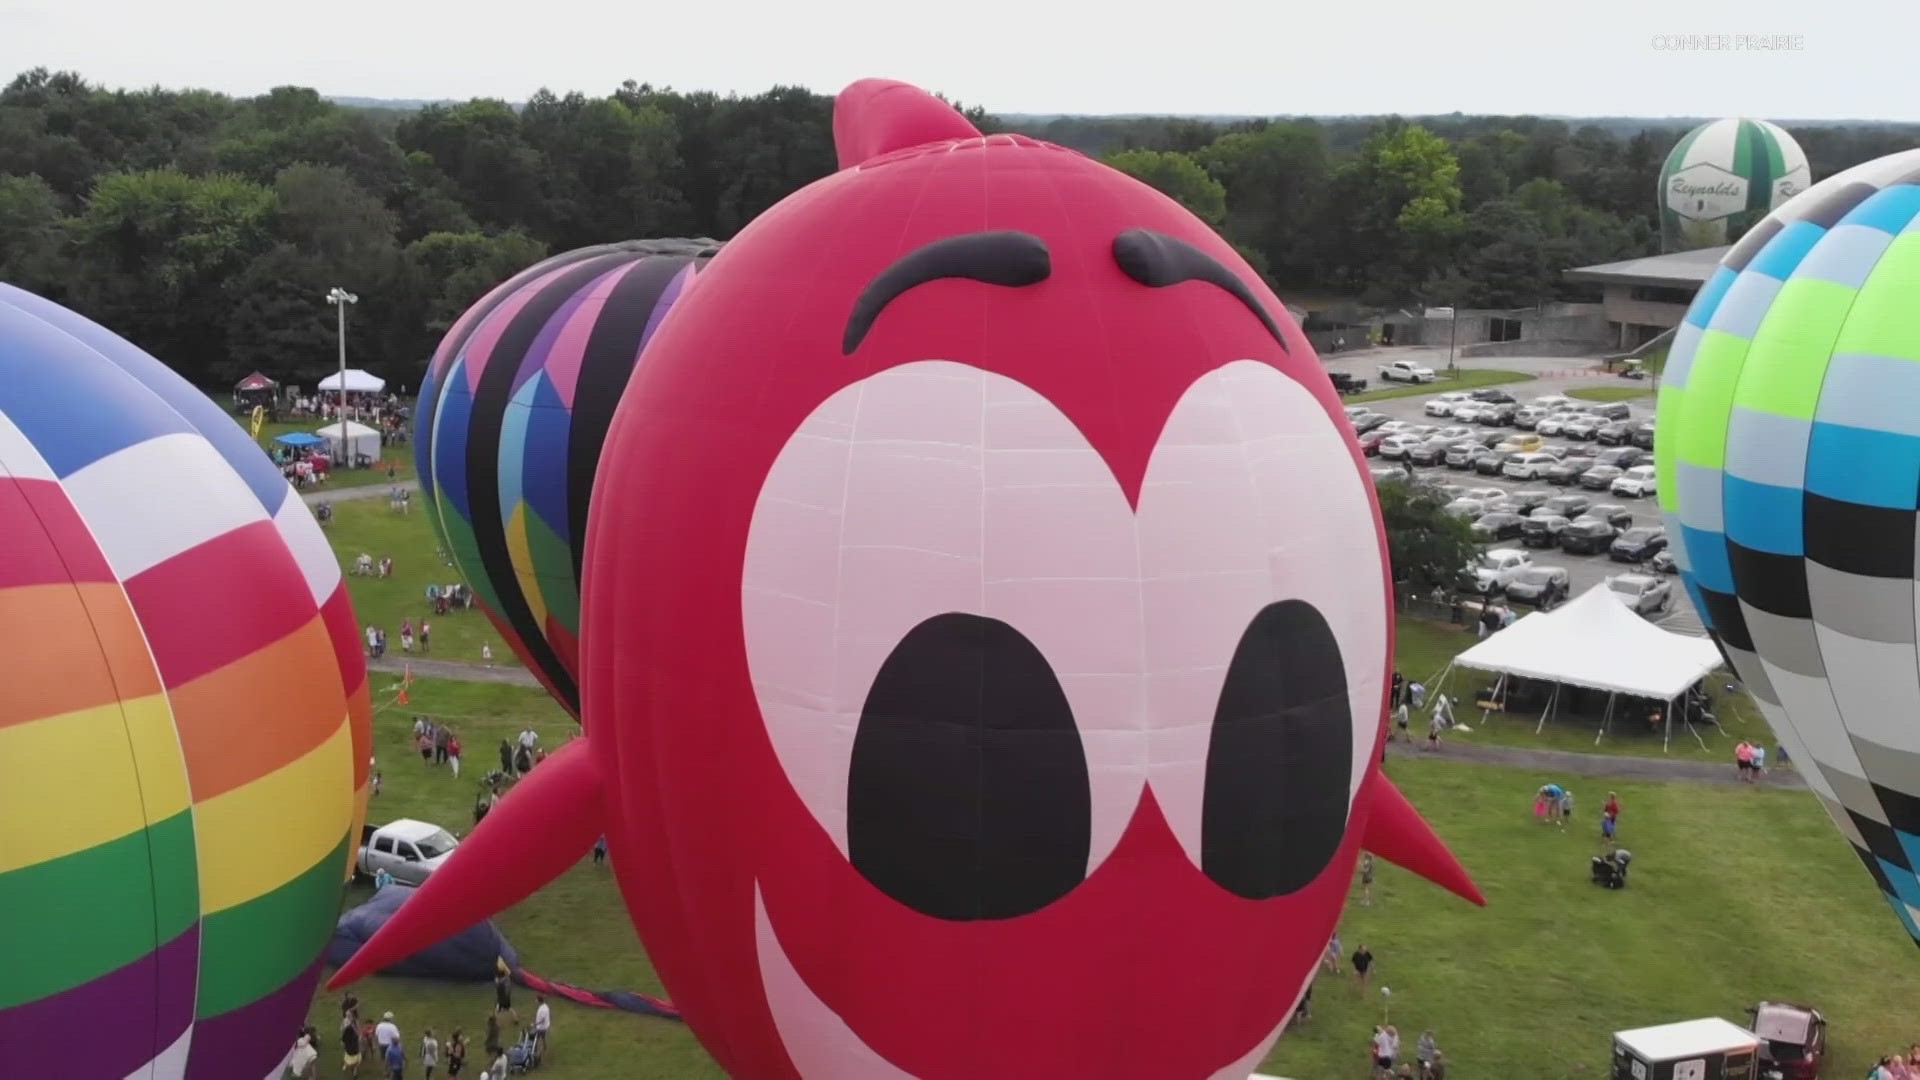 'Jupiter Flights Balloon Festival' returns